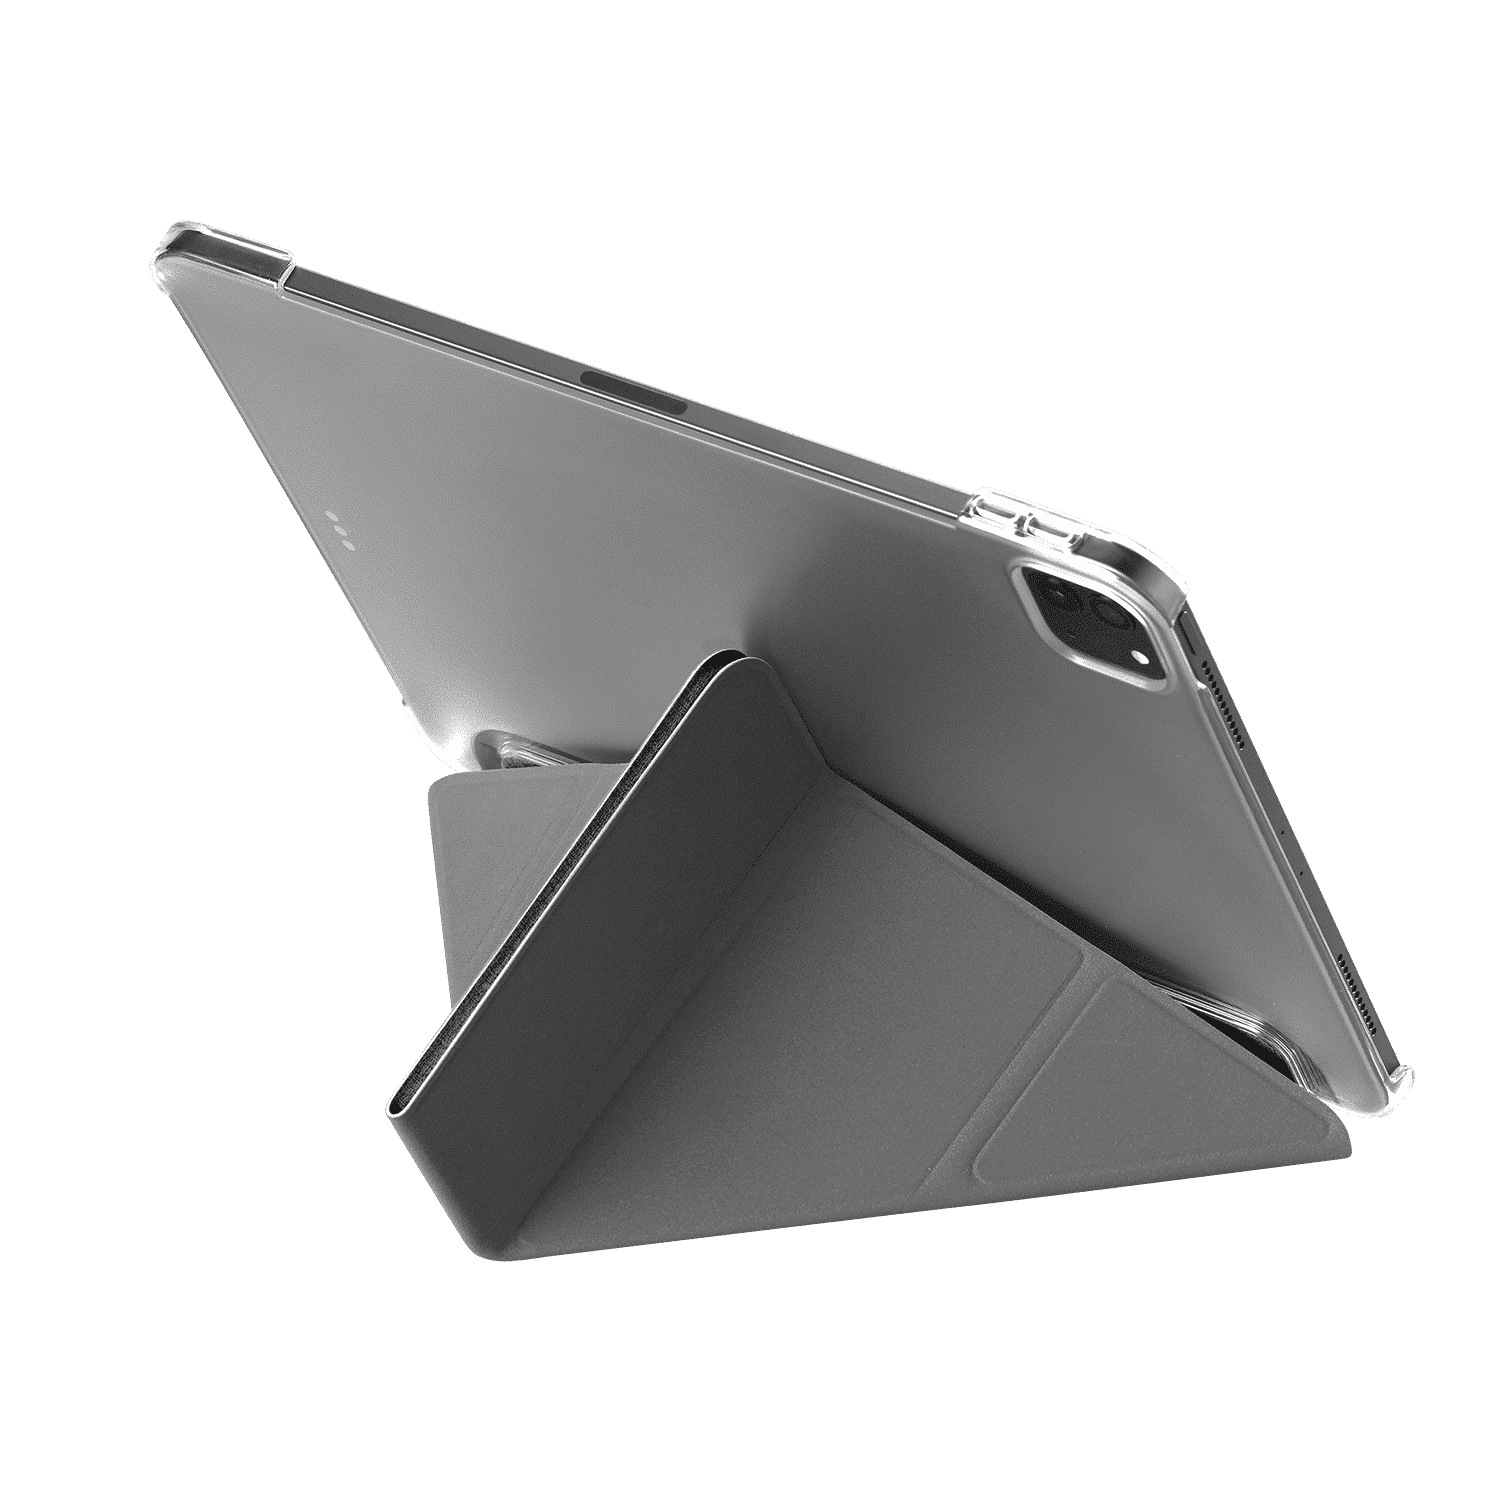 เคส Momax รุ่น Flip Cover Case - iPad Pro 11" (3rd Gen/2021) - Dark Grey